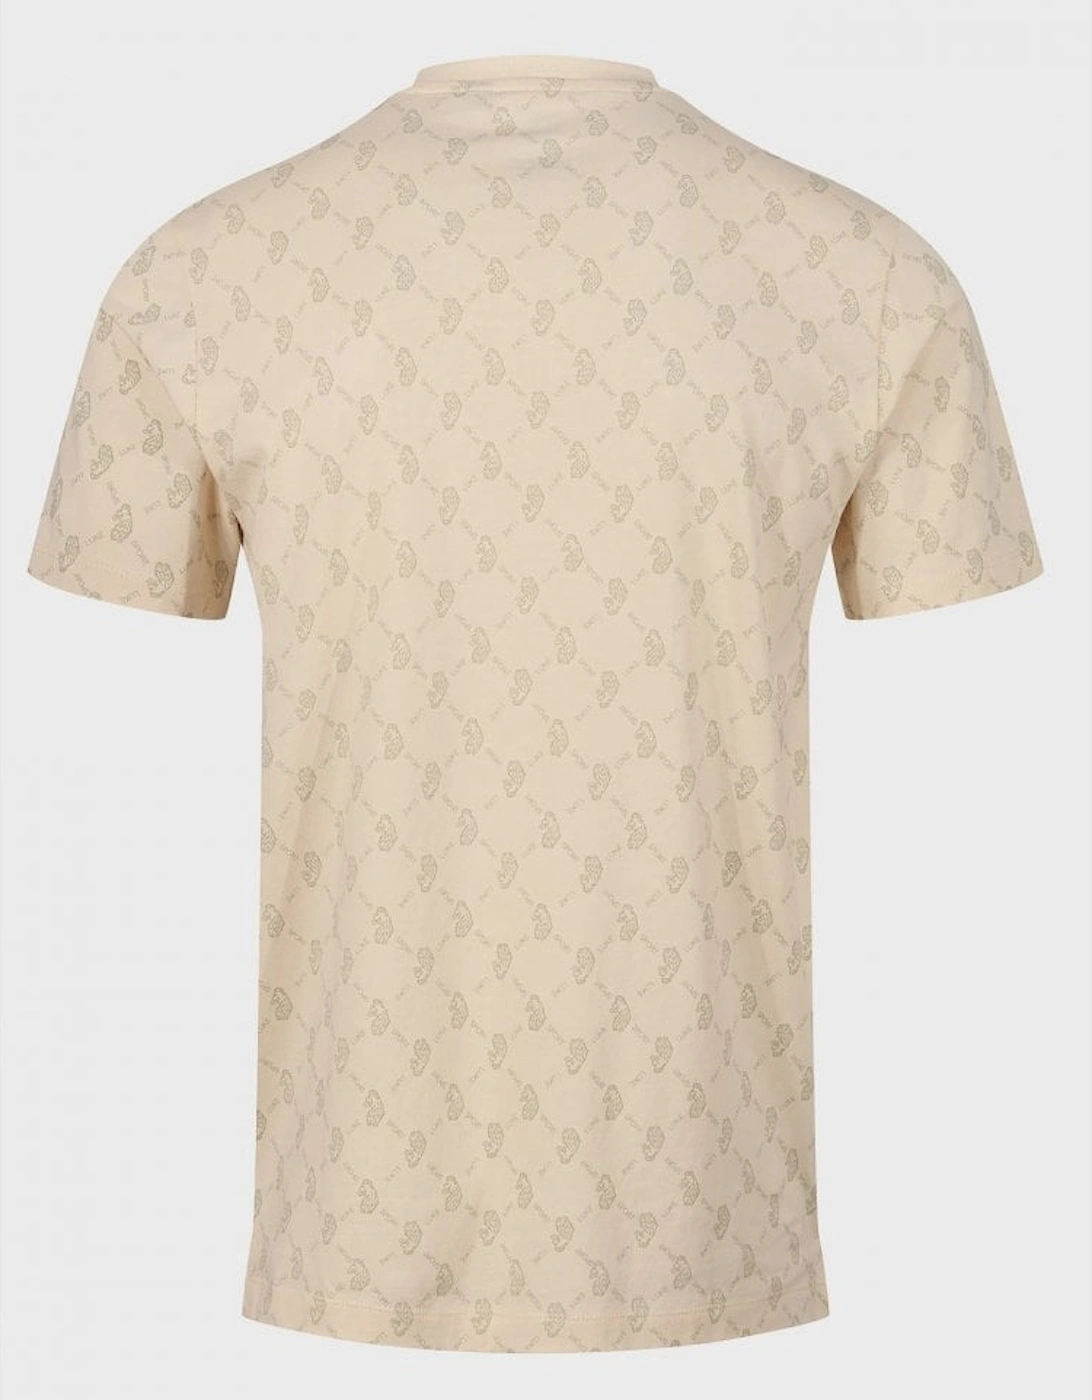 LUKE1977 Lineker Overprint T-Shirt - Ecru